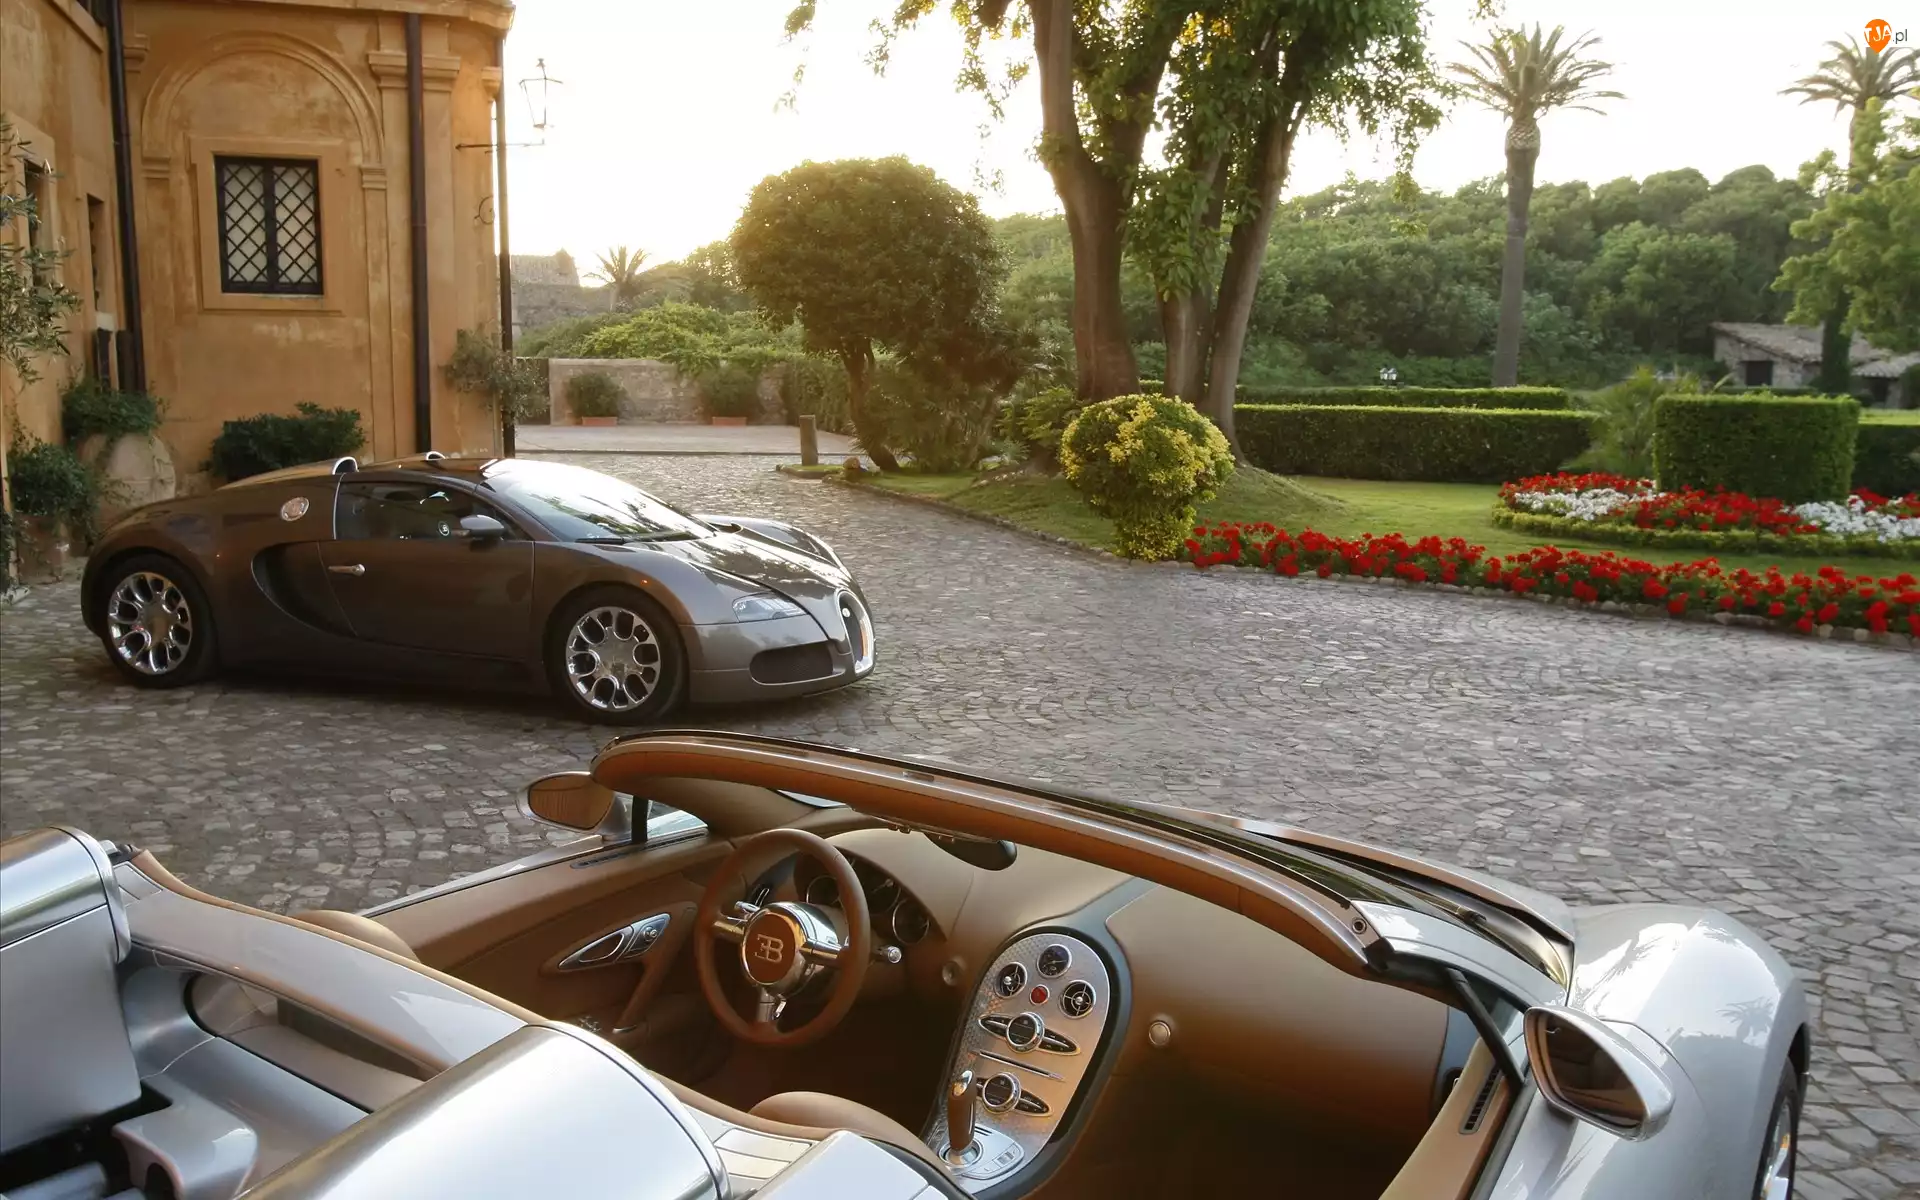 Dom, Bugatti Veyron, Ogród, Samochód